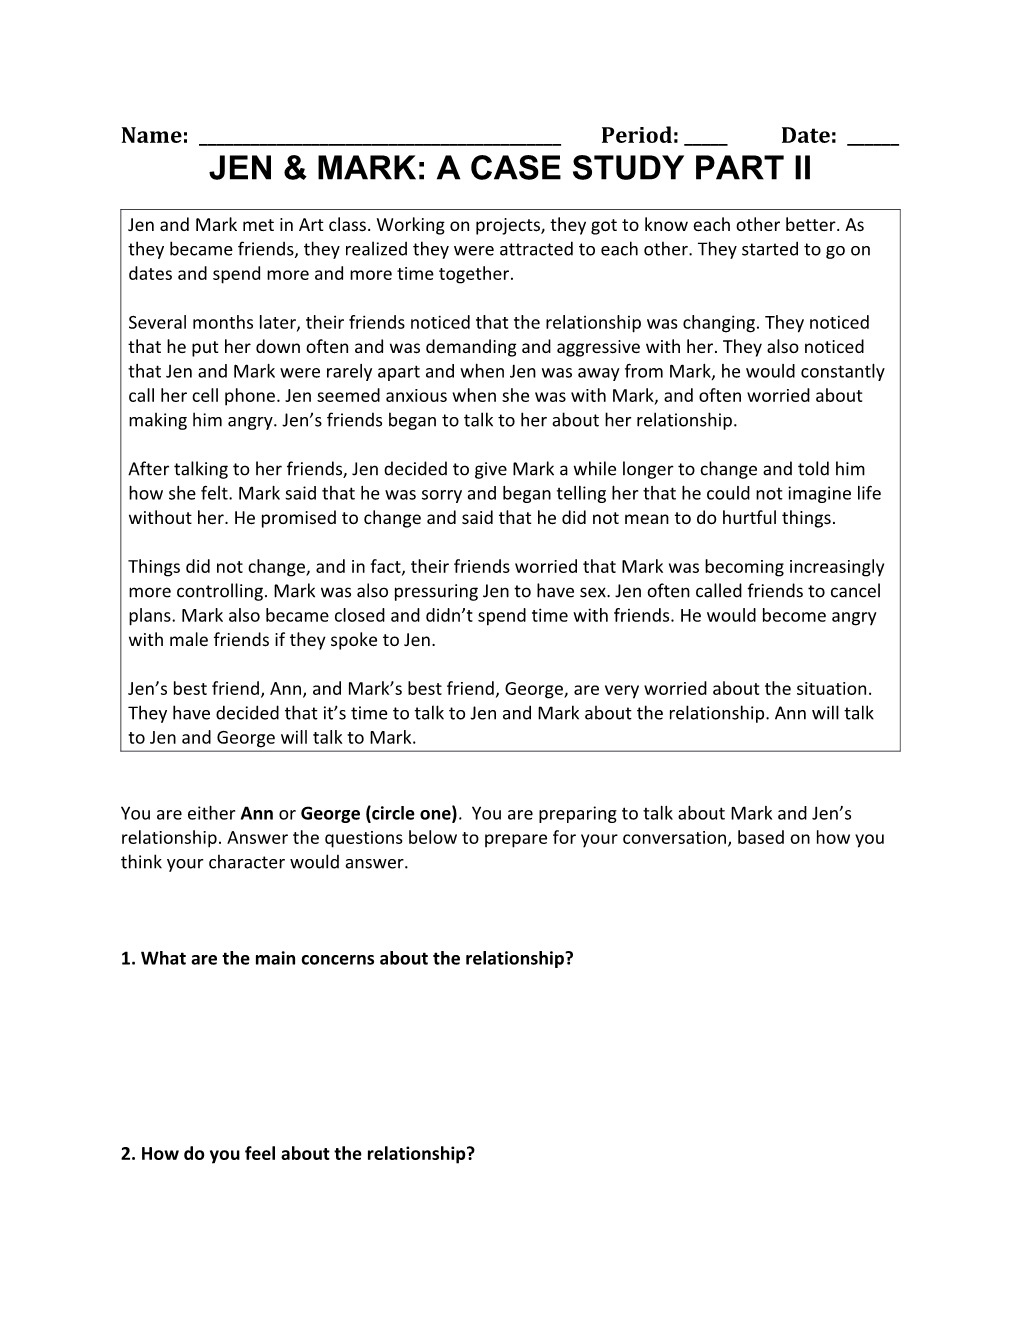 Jen & Mark: a Case Study Part Ii